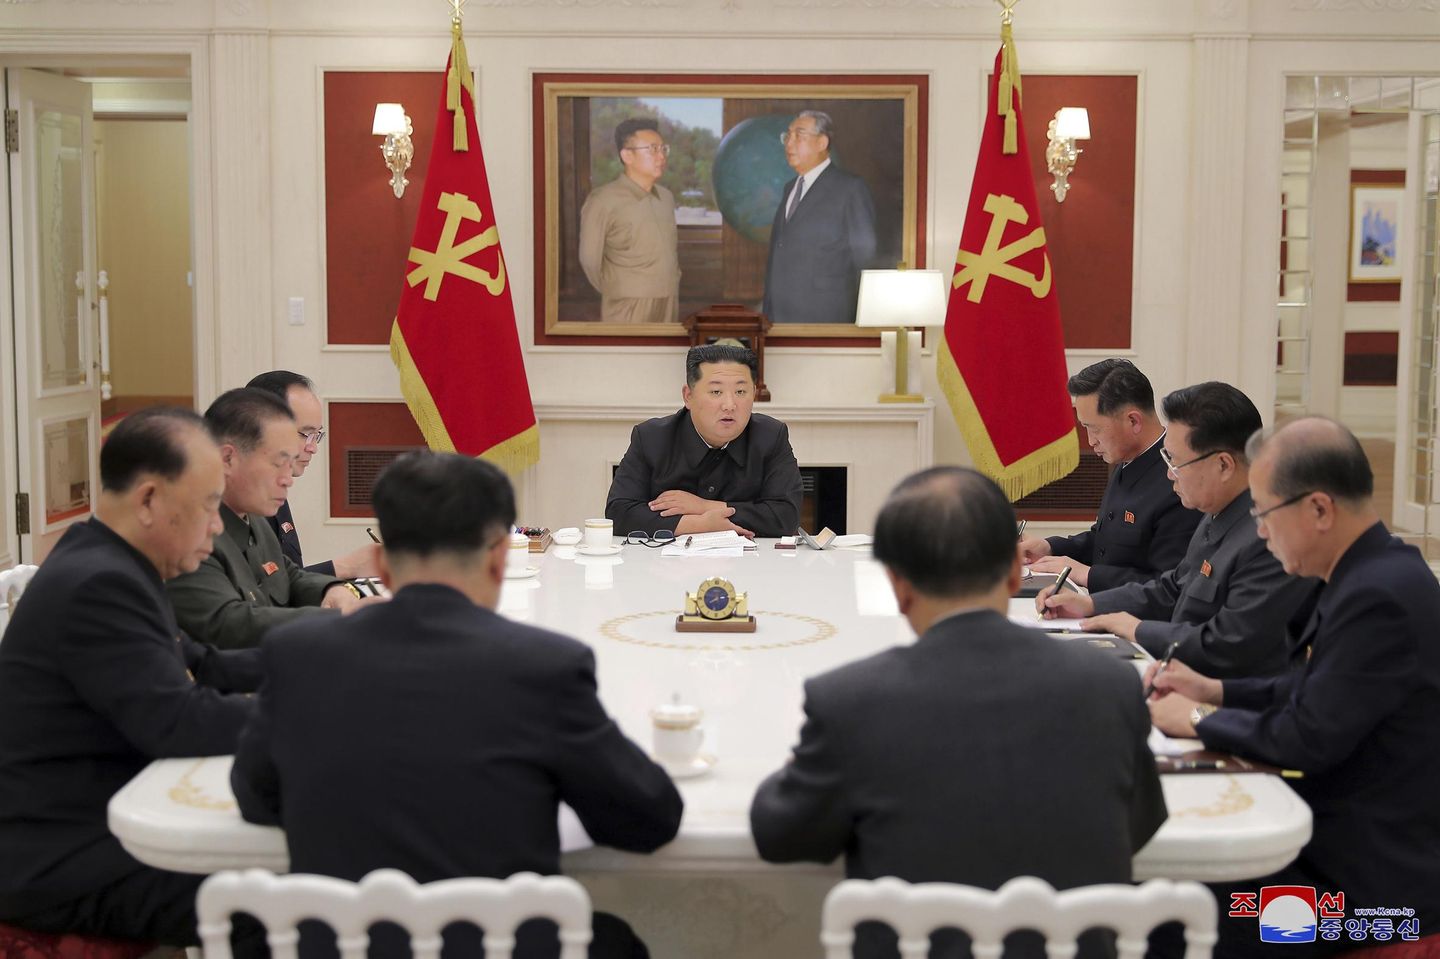 DSÖ eksik verilerden endişe duyduğu için Kuzey Kore toparlanmayla övünüyor